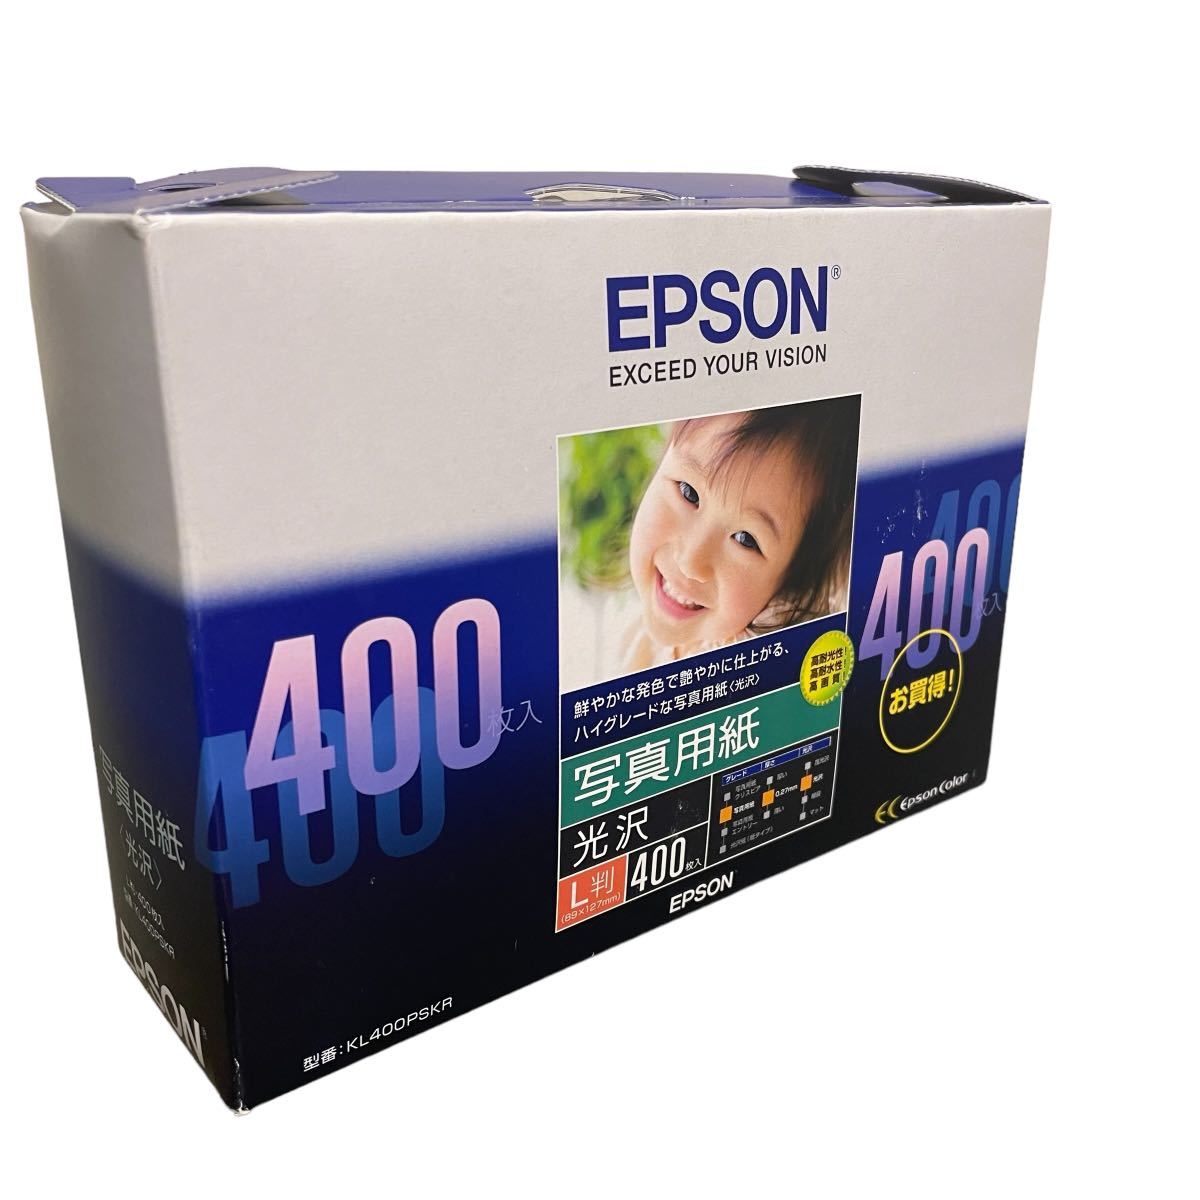 まとめ エプソン EPSON L判 光沢 1箱 400枚 KL400PSKR 写真用紙